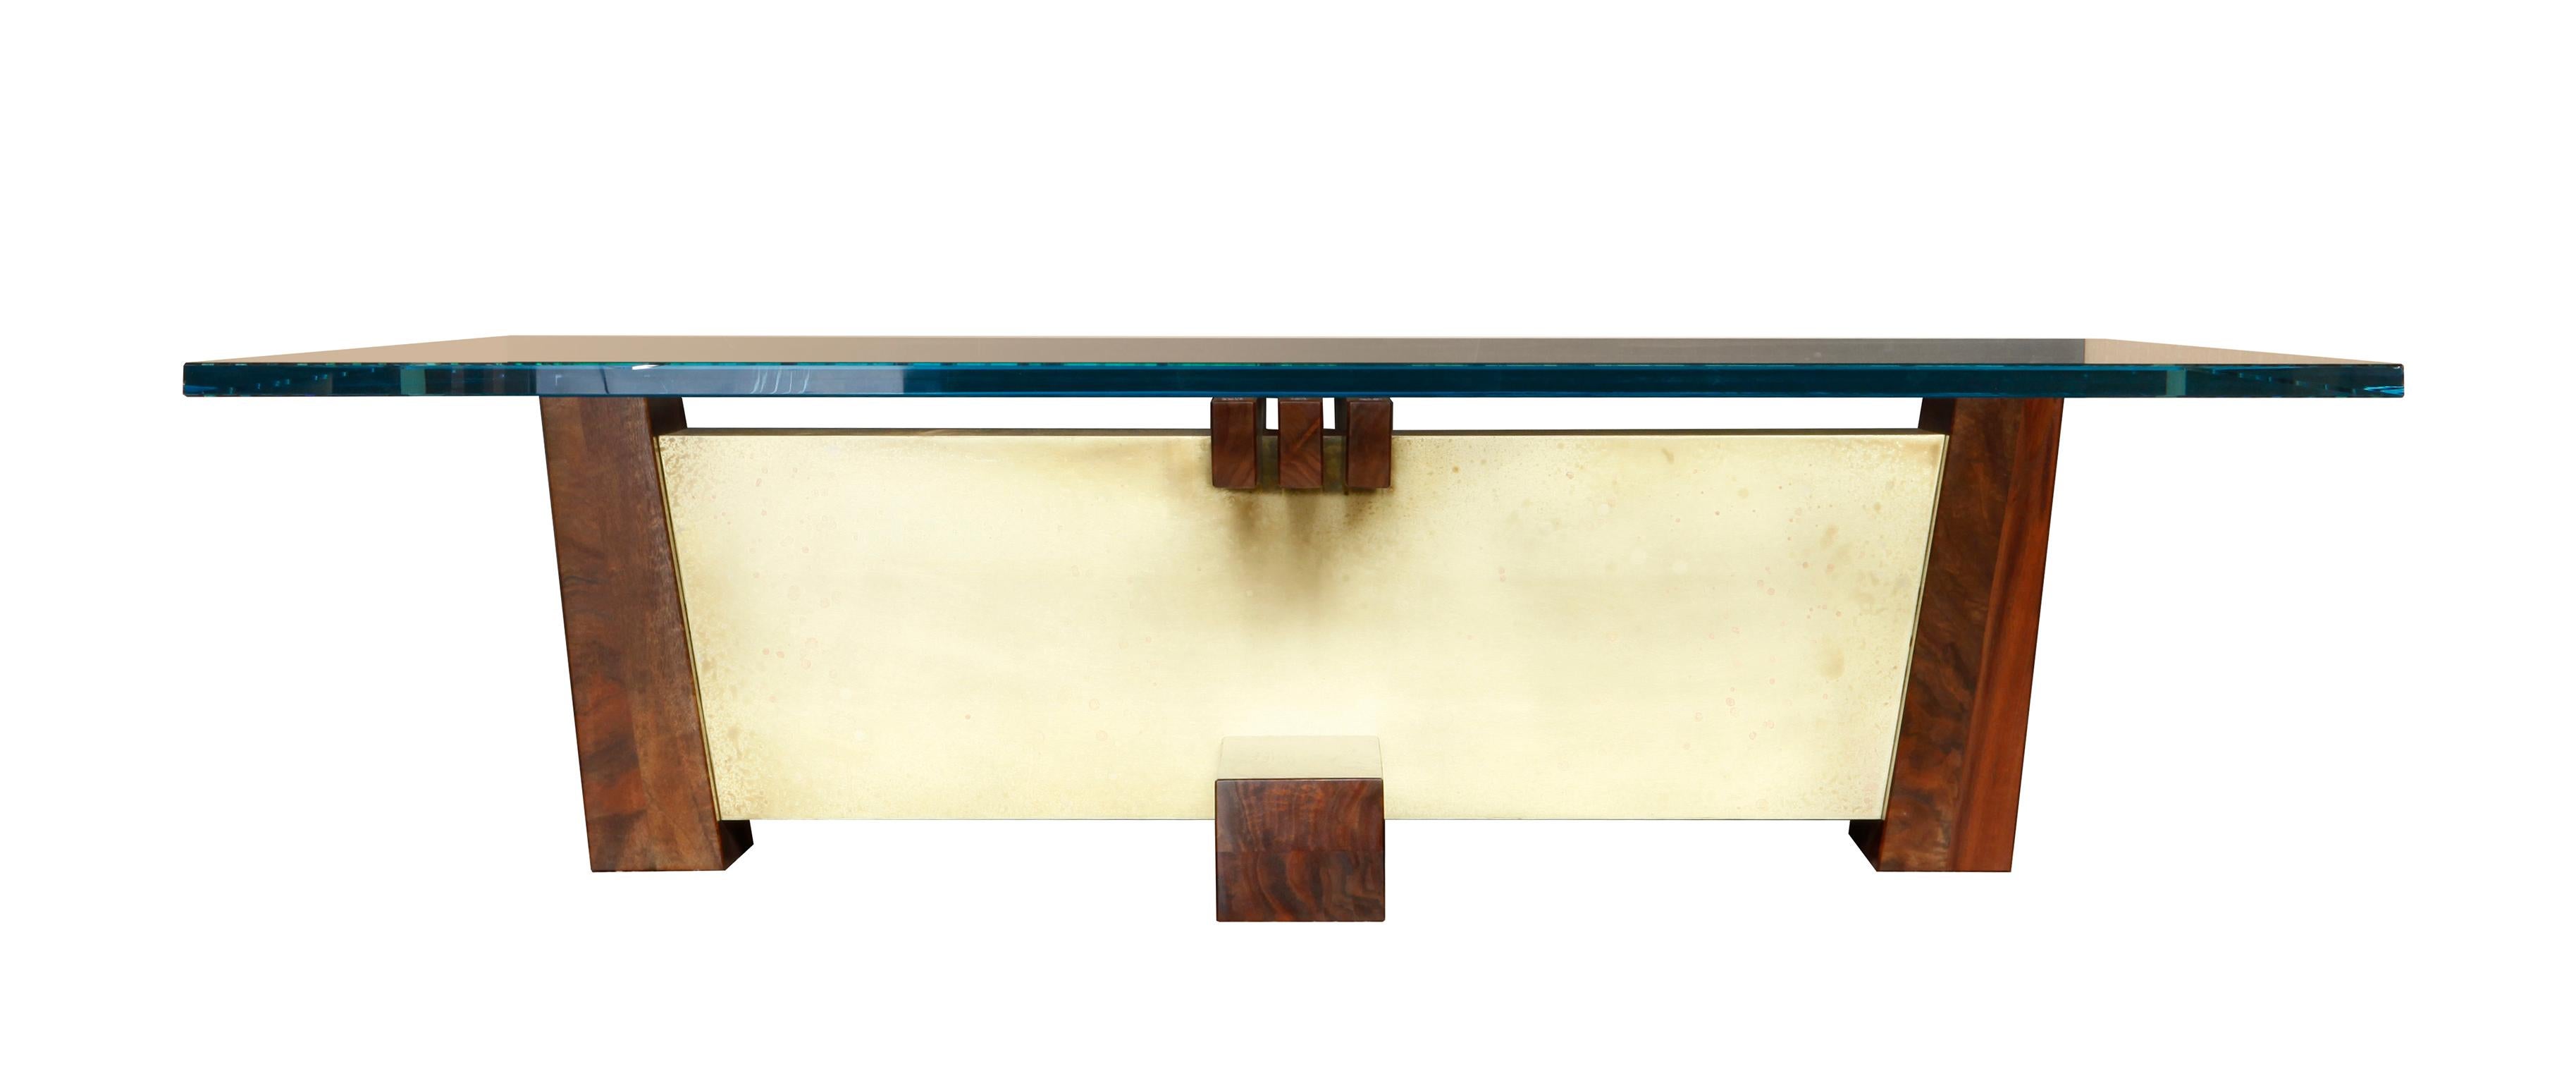 ¡¡VENTA DE MUESTRAS DE SUELO!!

Modelo de suelo con un uso muy ligero, en general en muy buen estado.

La mesa de cóctel FLW [Frank Lloyd Wright] se inspira en la estética Arts & Crafts. En este clásico de Studio Roeper, los voladizos, la